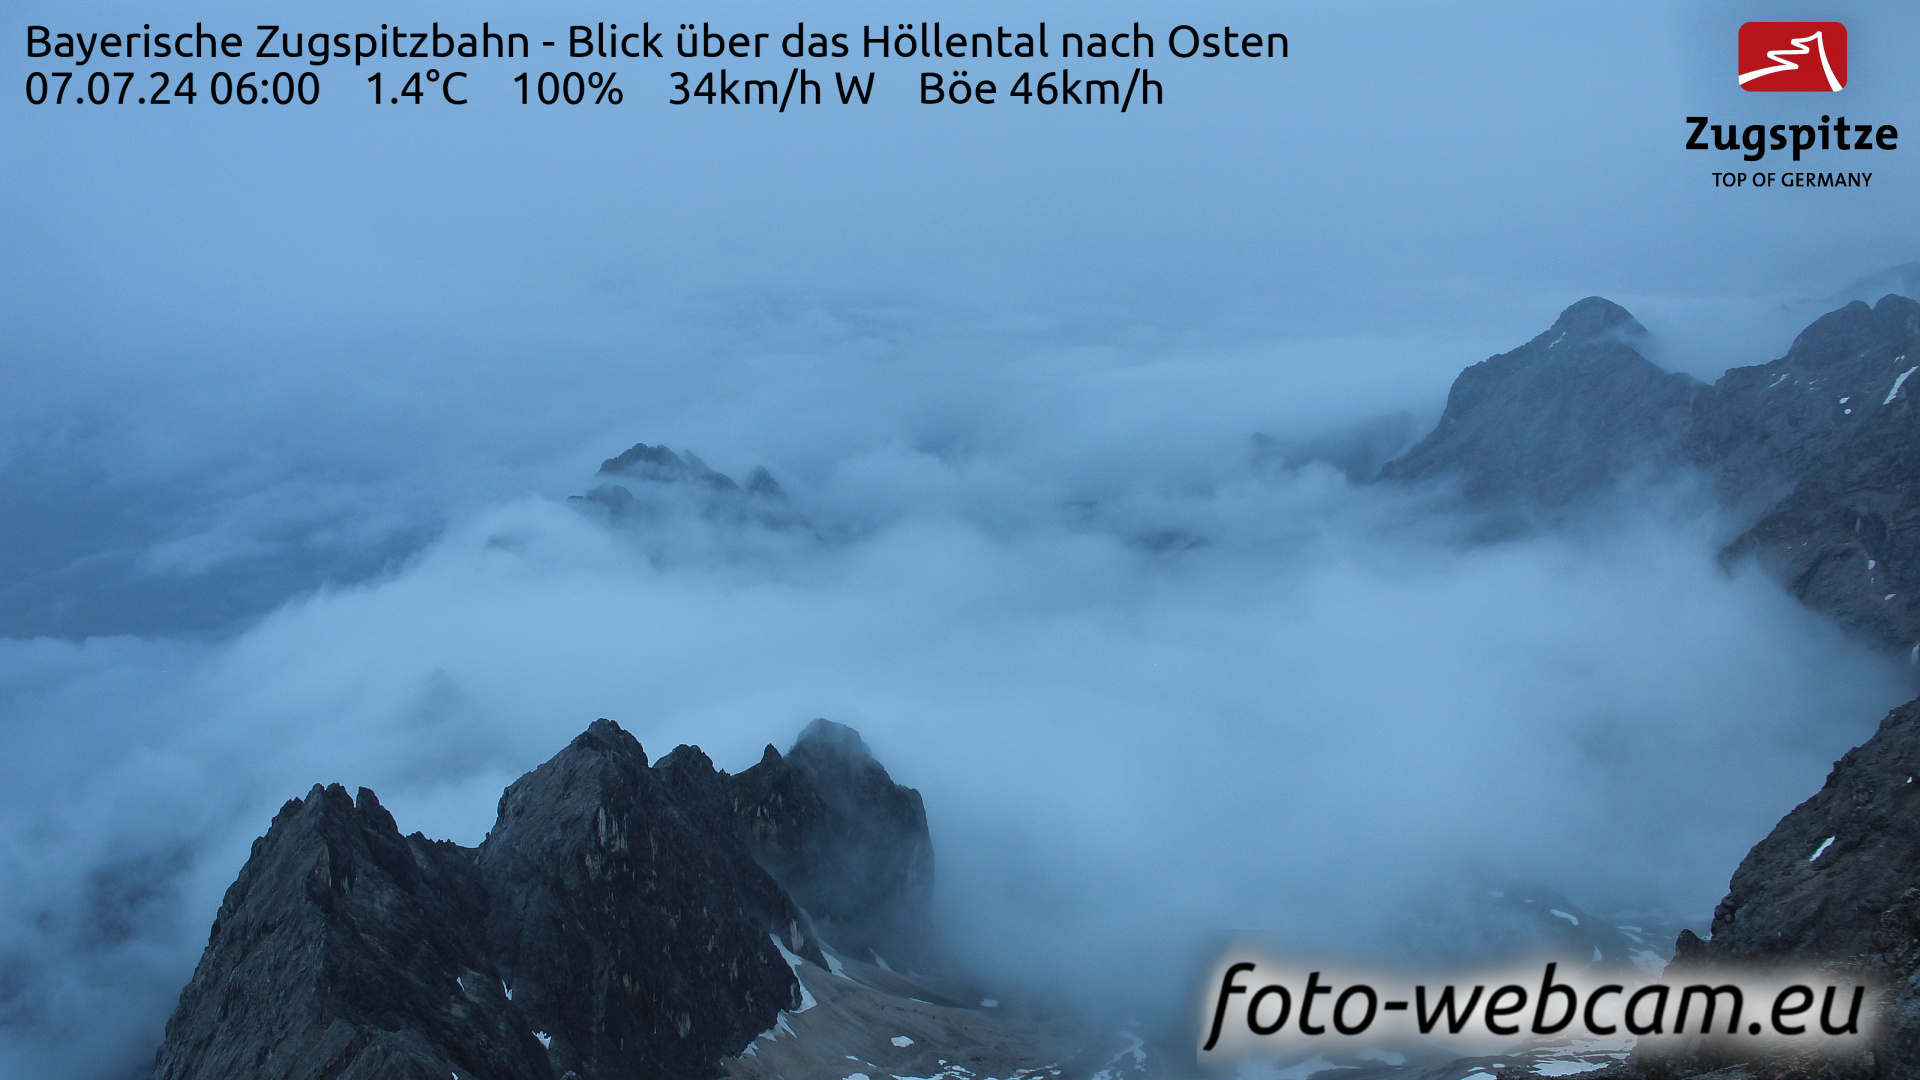 Zugspitze Wed. 06:05